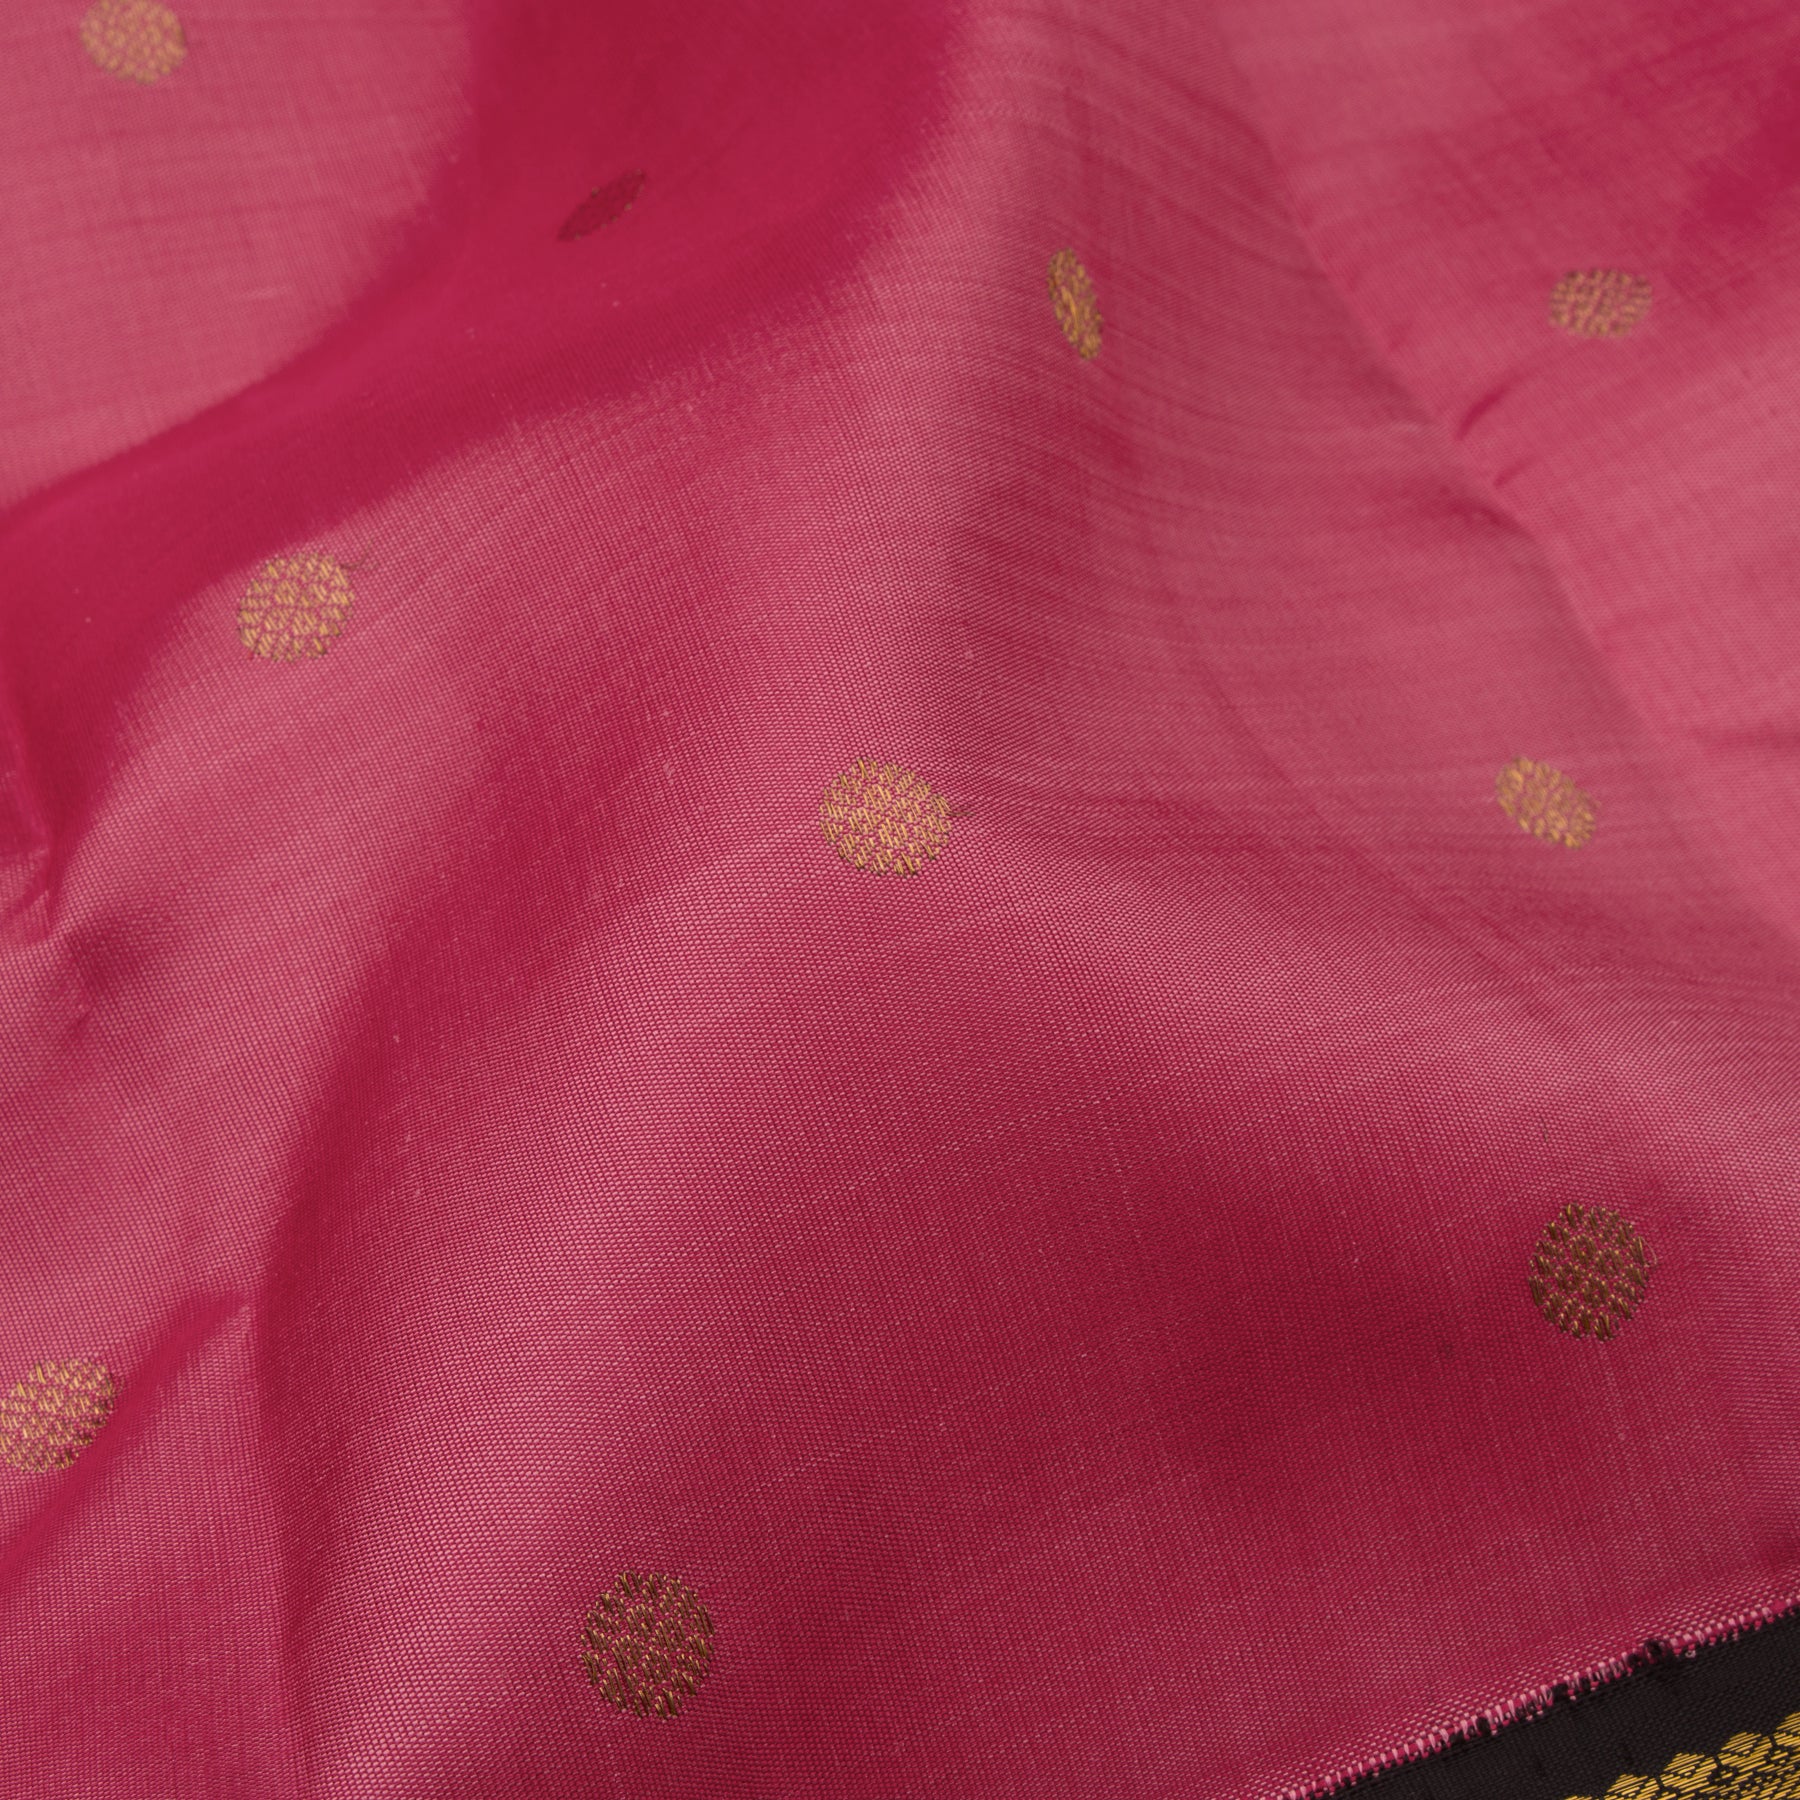 Kanakavalli Kanjivaram Silk Sari 23-110-HS001-02394 - Fabric View